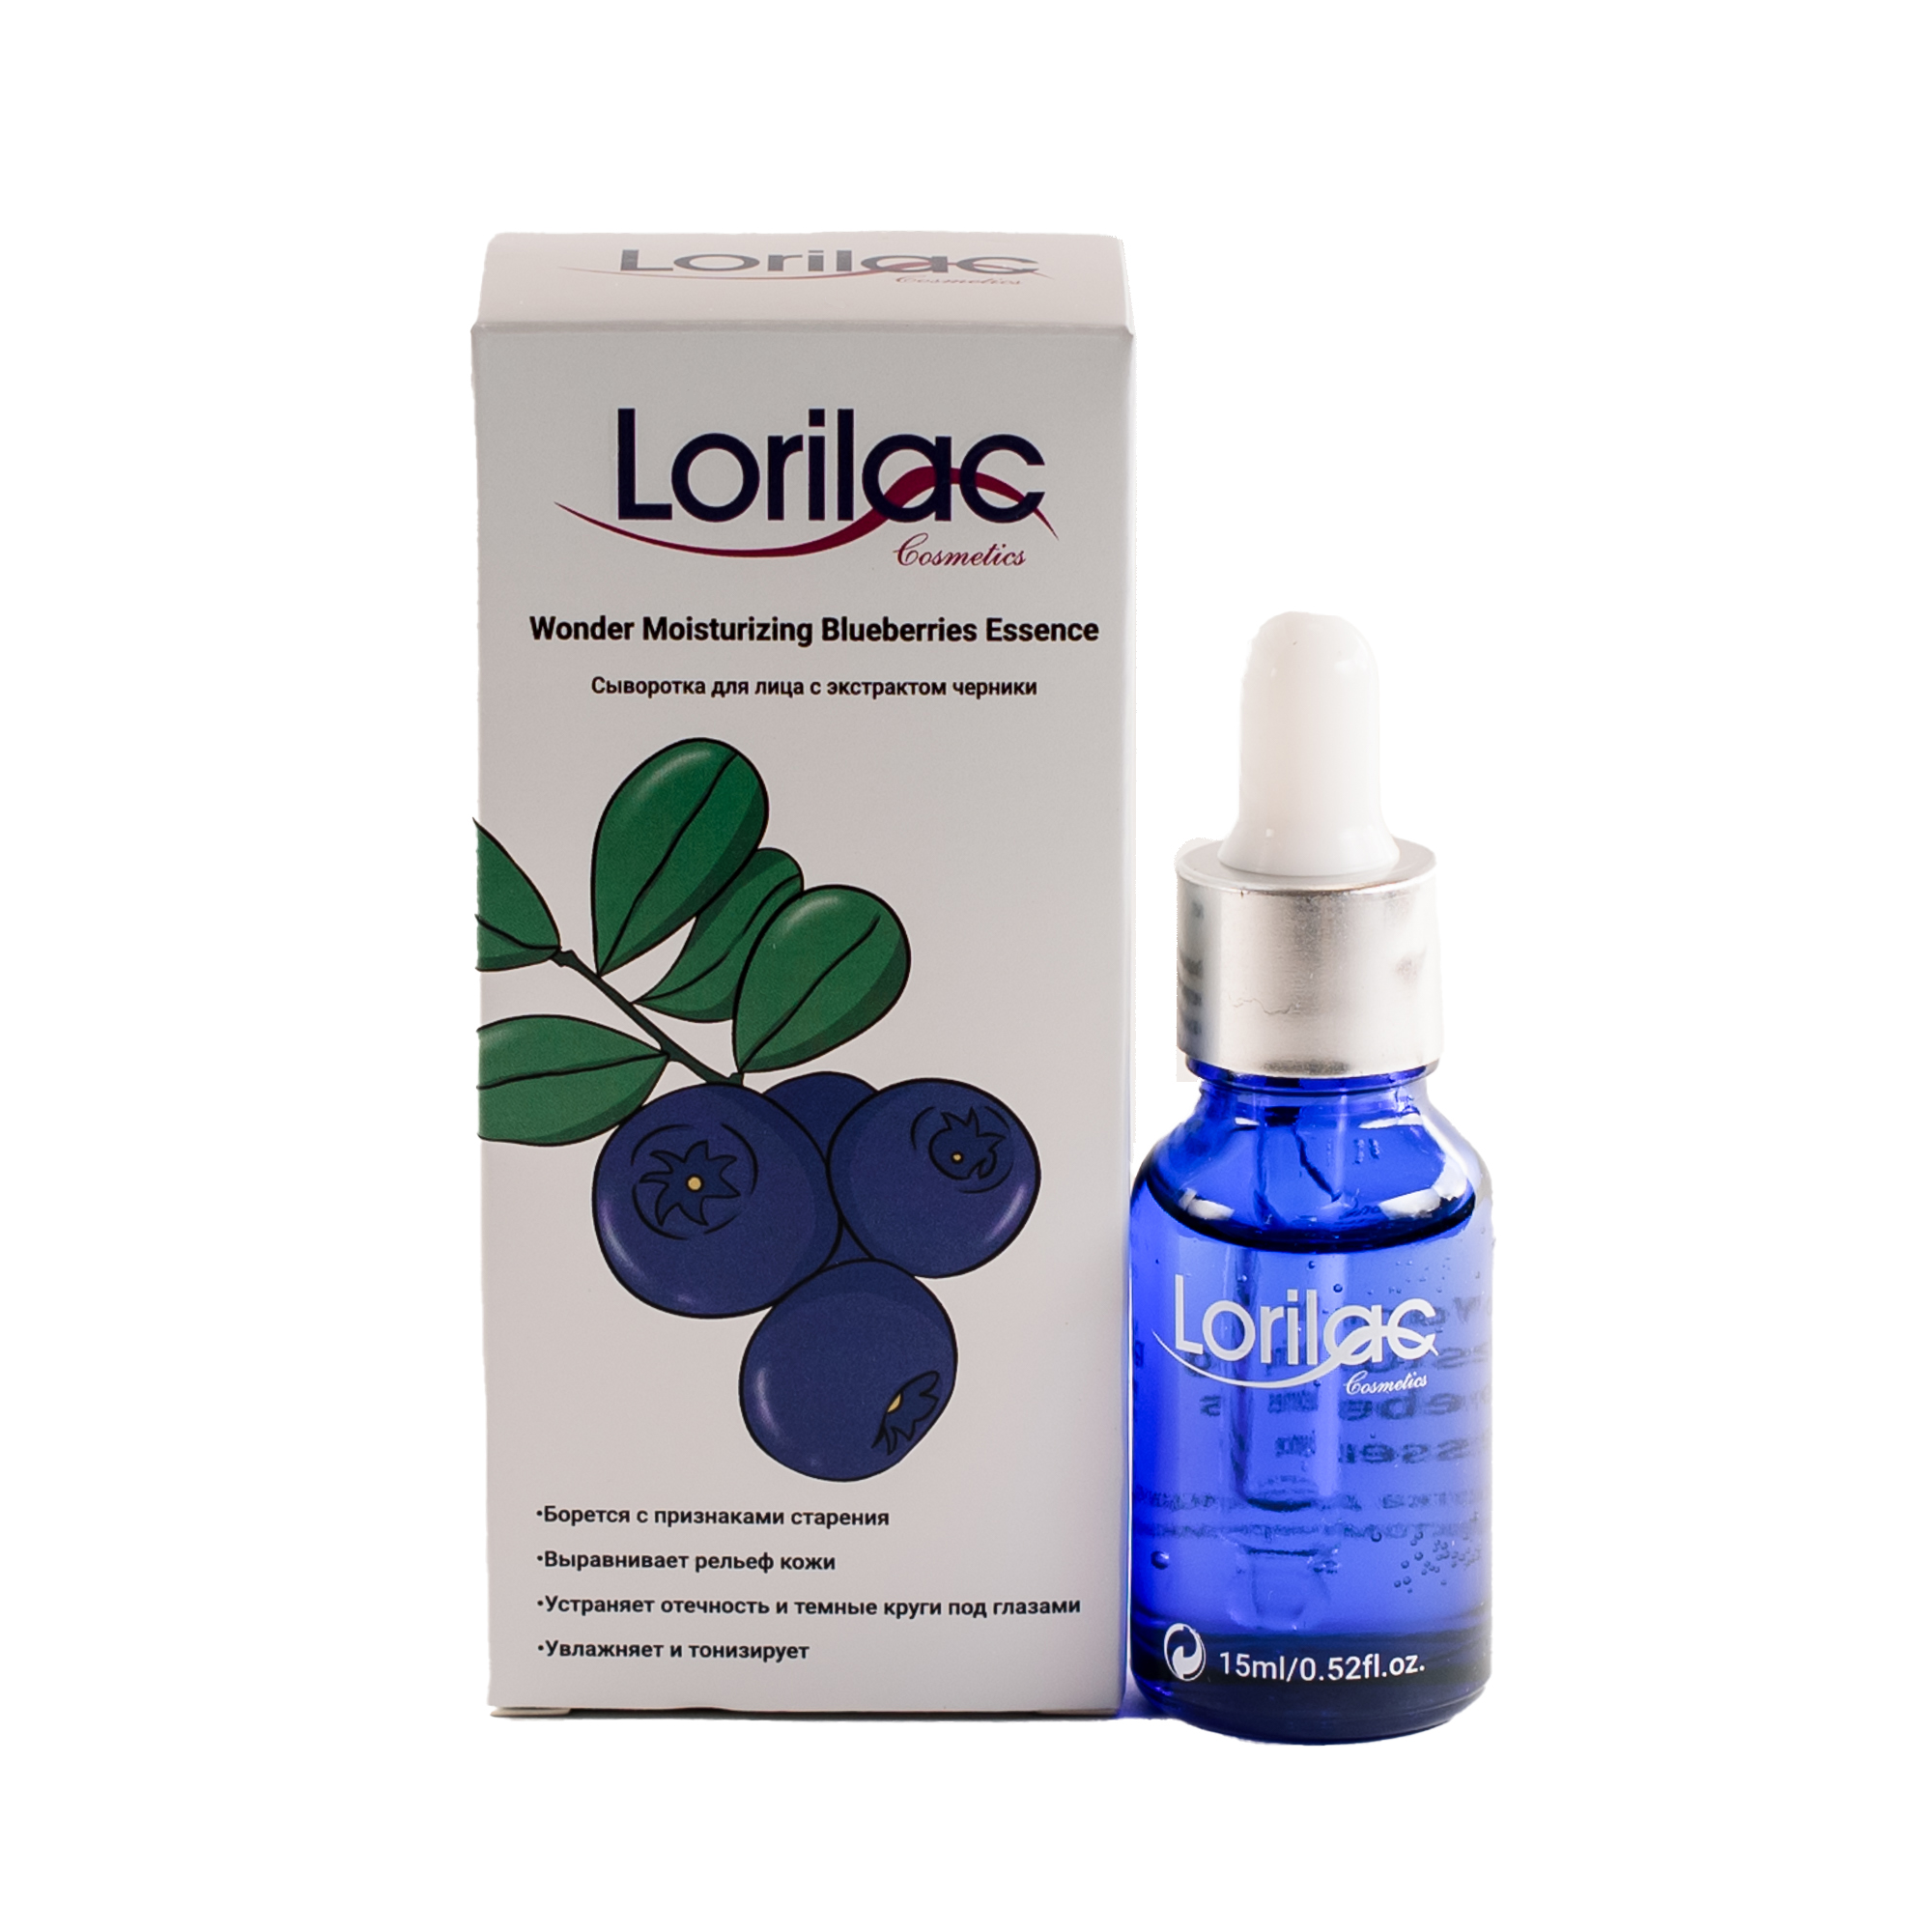 Купить Сыворотка для лица Lorilac с экстрактом черники Wonder Blueberries Essence 15ml, B018